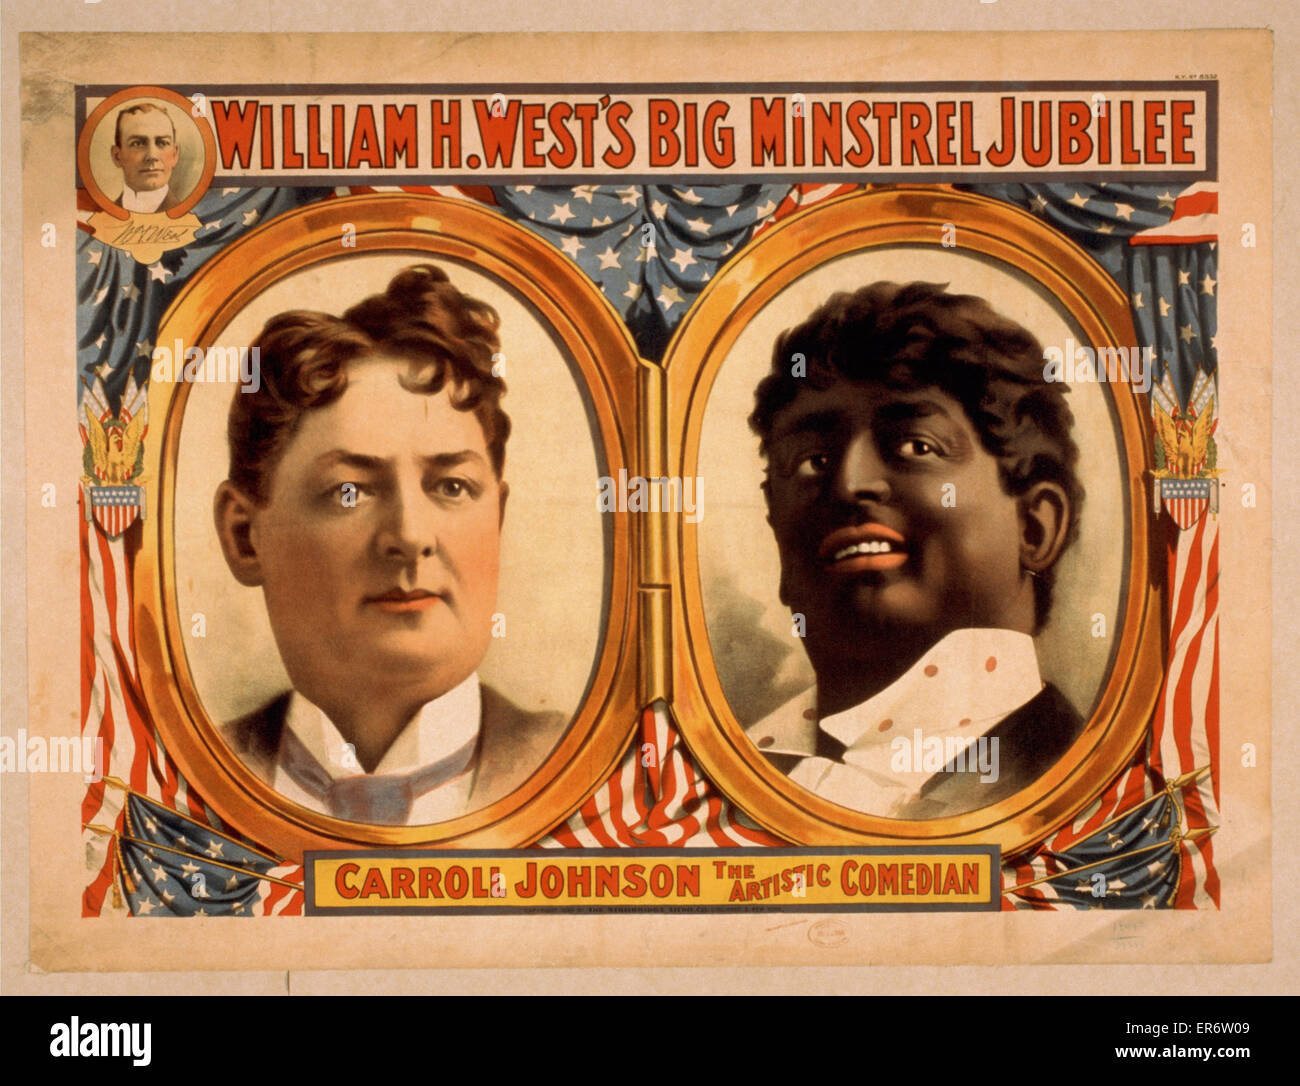 William H. West's Big Minstrel Jubilé. Se compose de portraits de Carroll Johnson, l'un comme lui-même et l'autre en blackface. Date c1899. Banque D'Images